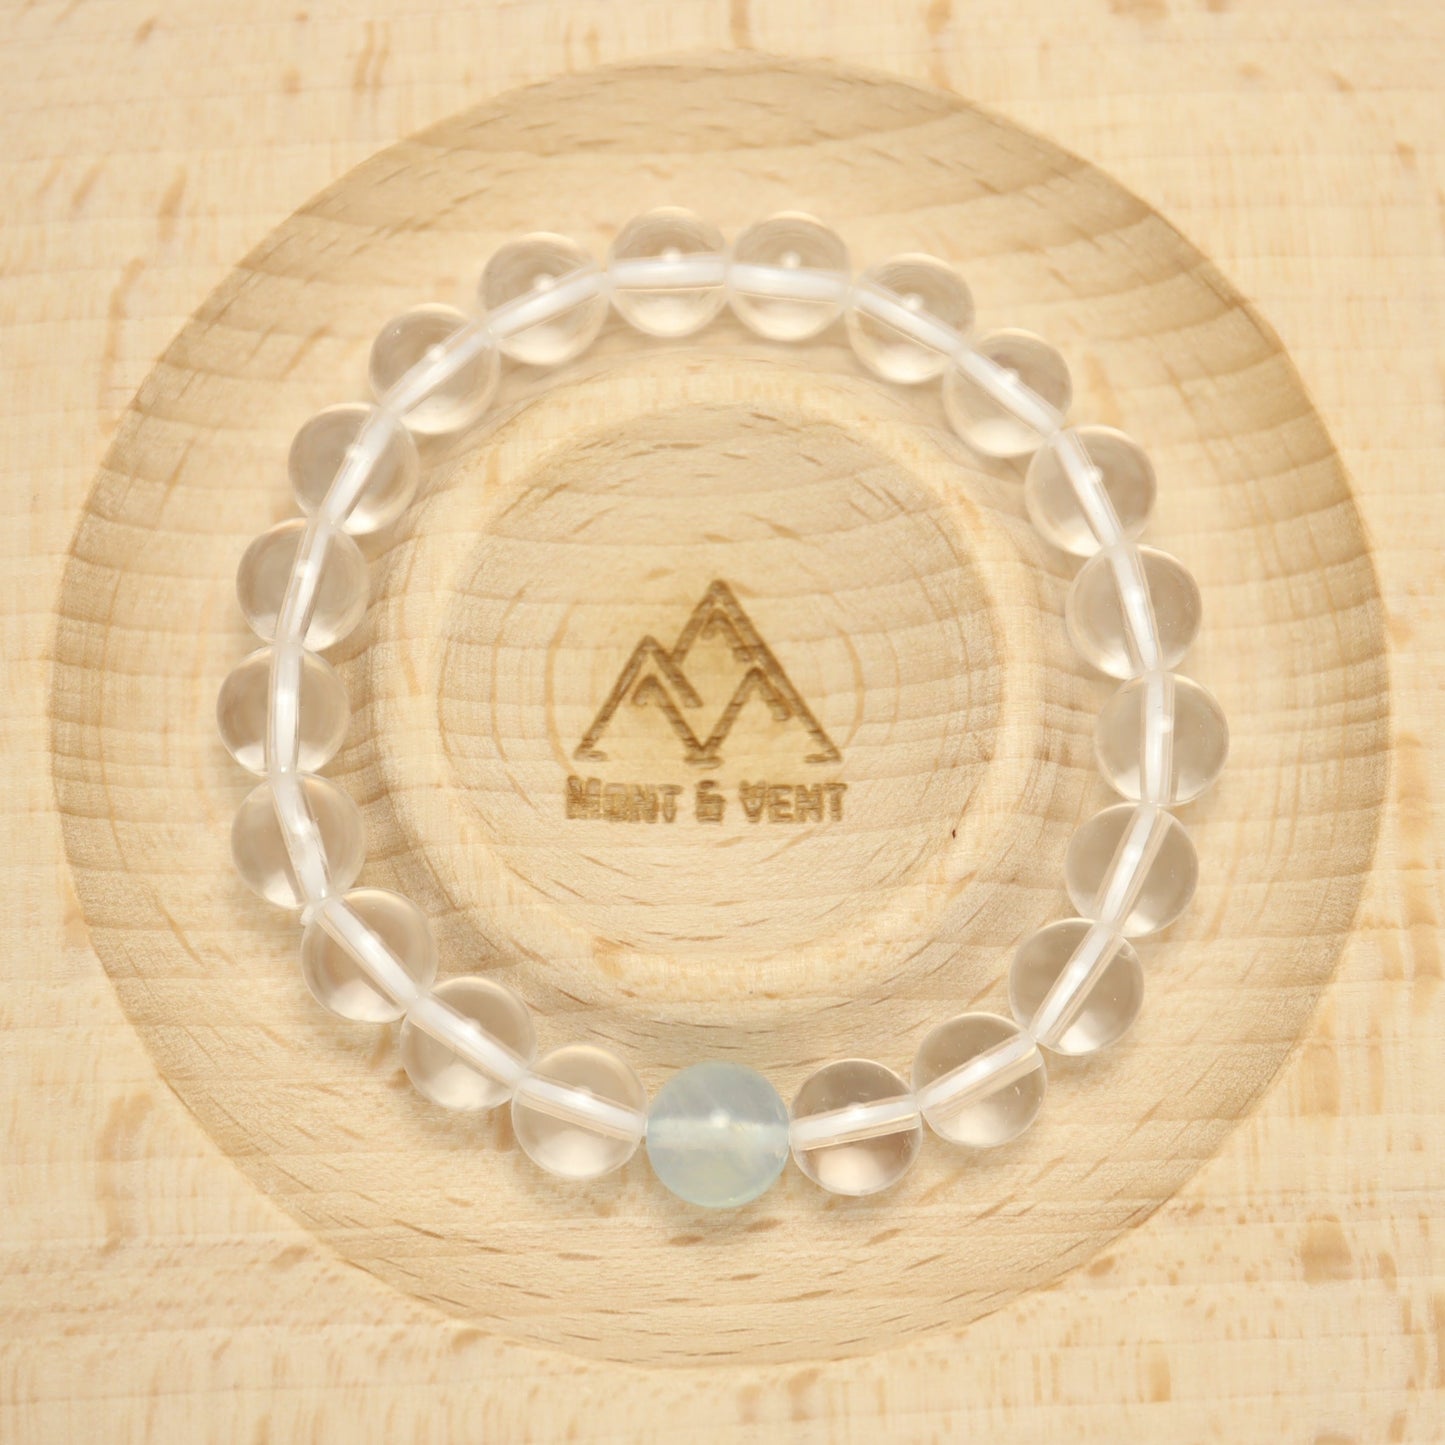 Tranquil Ocean - Clear Quartz & Aquamarine Bracelet